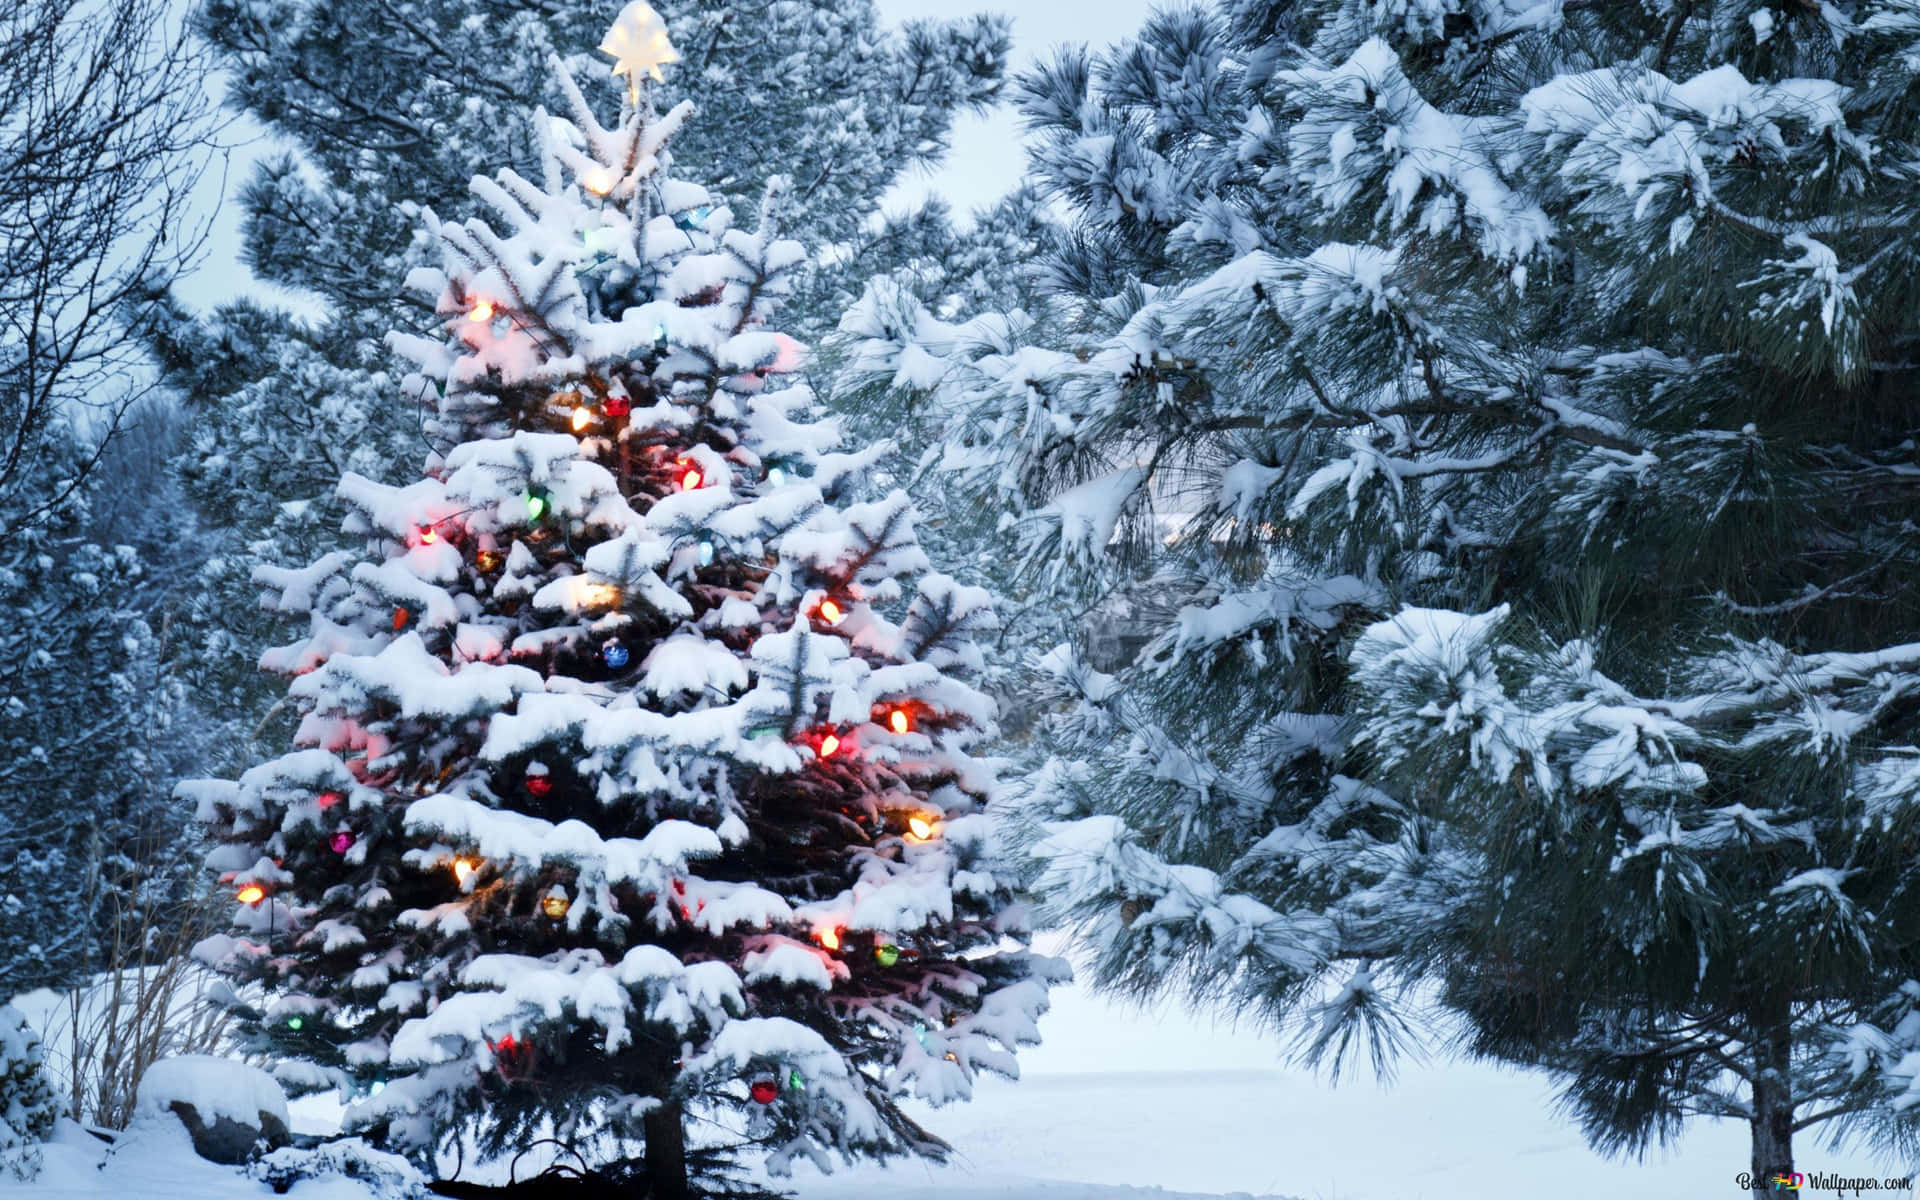 Nyd den blide snefald af det festlige juledags sæson Beskrivelse: Fejr helligdage med en scene af hvid sne faldt mod en blå vinter himmel. Relaterede nøgleord: ferie, jul, sne, vinter, festlig, sæson, snefald, blå himmel Wallpaper